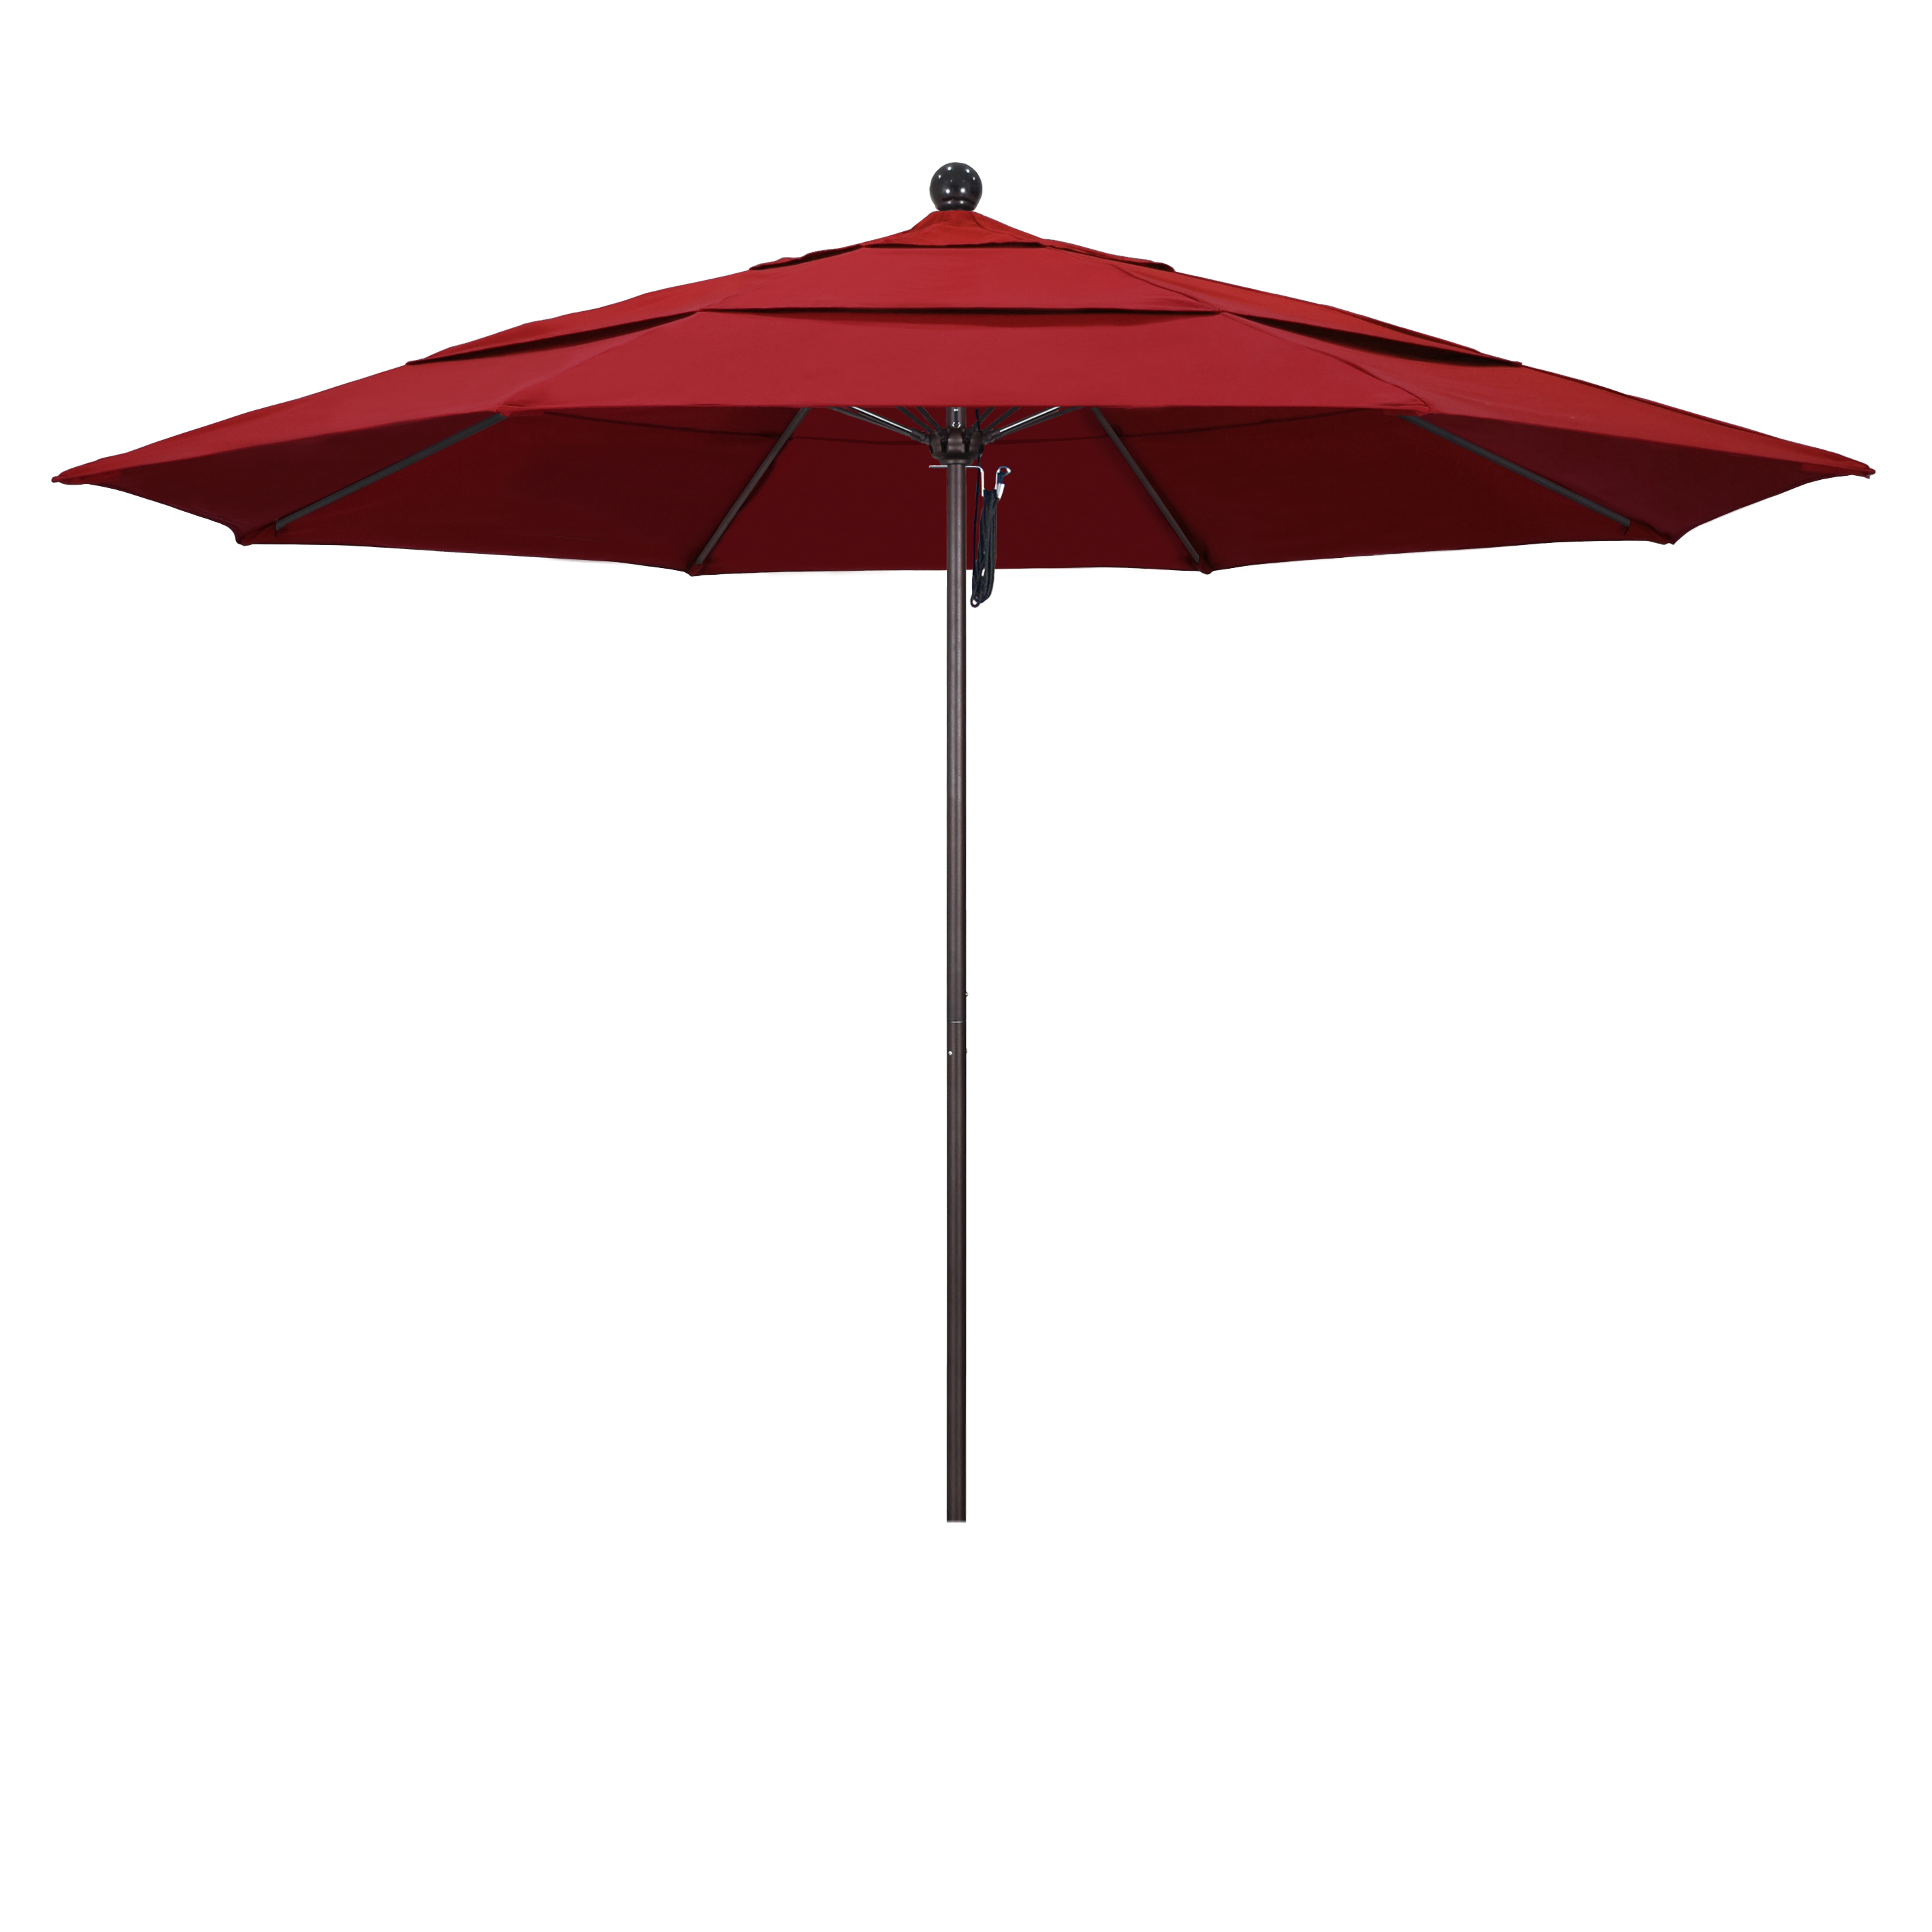 Picture of California Umbrella ALTO118117-F13-DWV 11 ft. Fiberglass Market Umbrella PO DVent Bronze-Olefin-Red